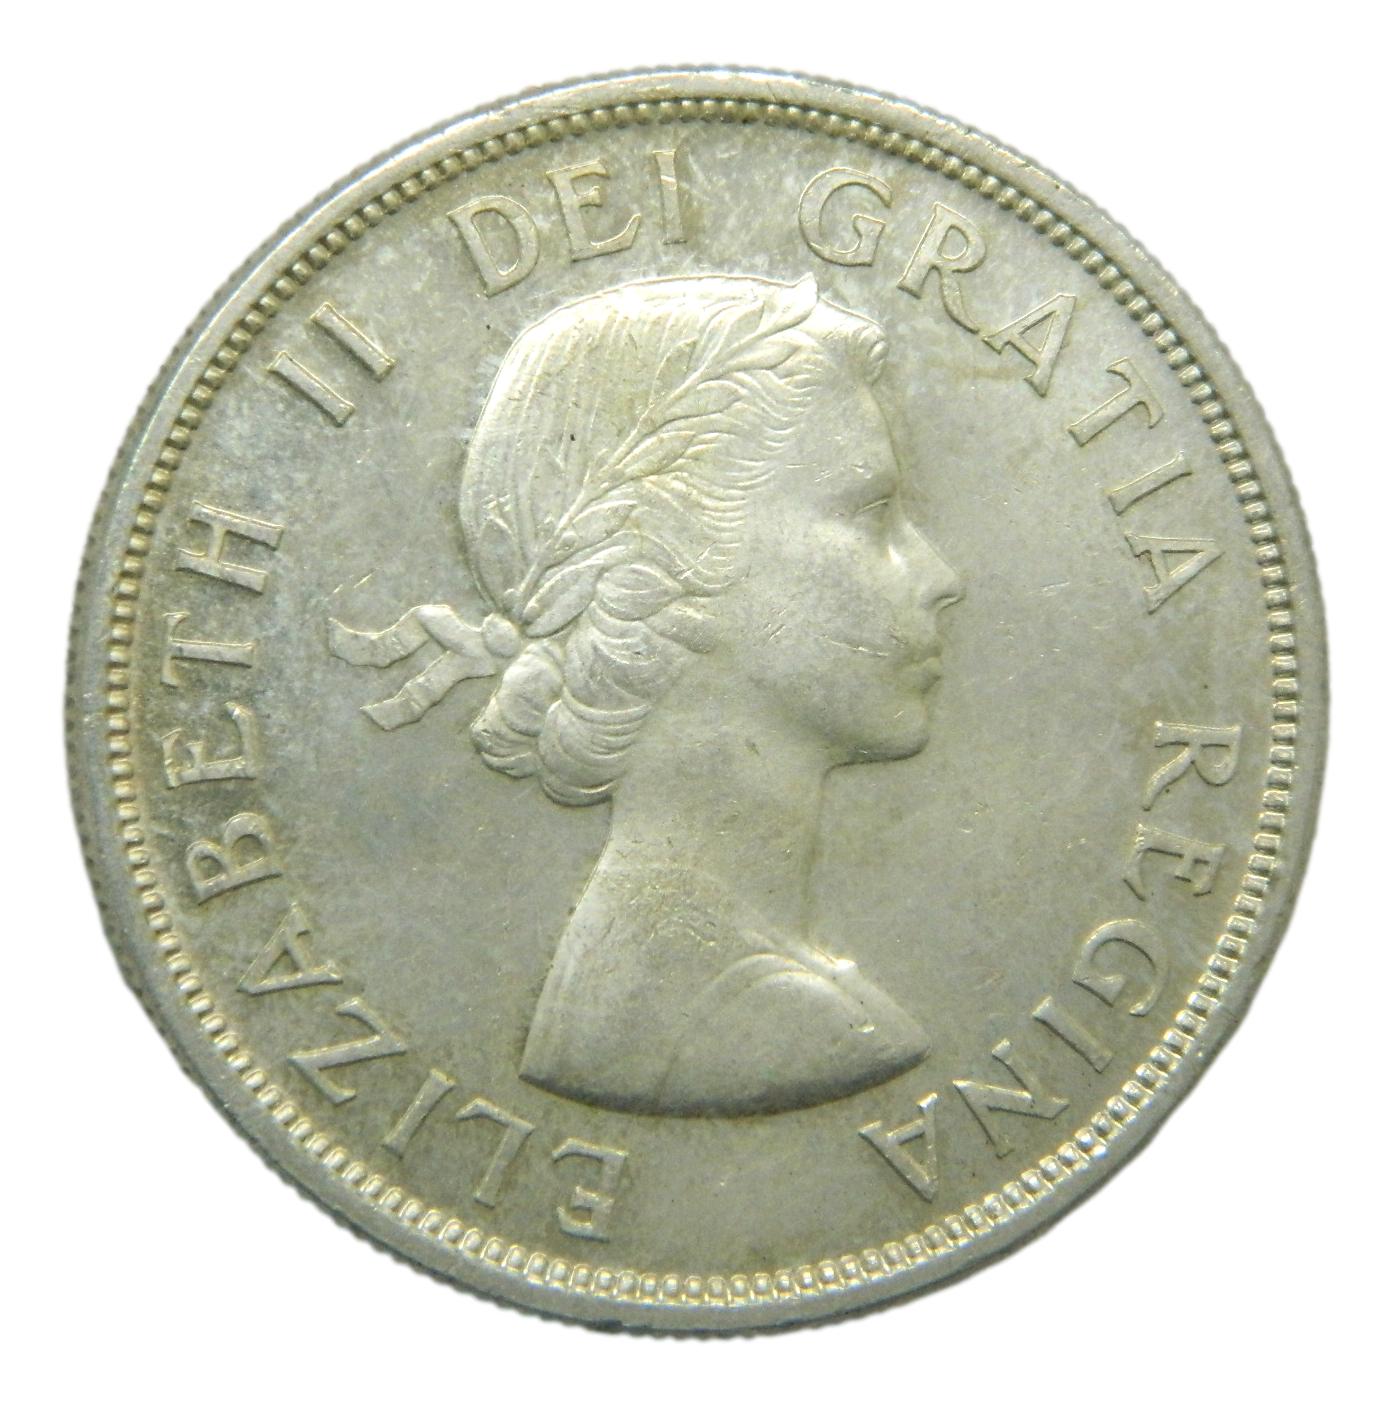 1960 - CANADA - DOLLAR - ELIZABETH II - PLATA